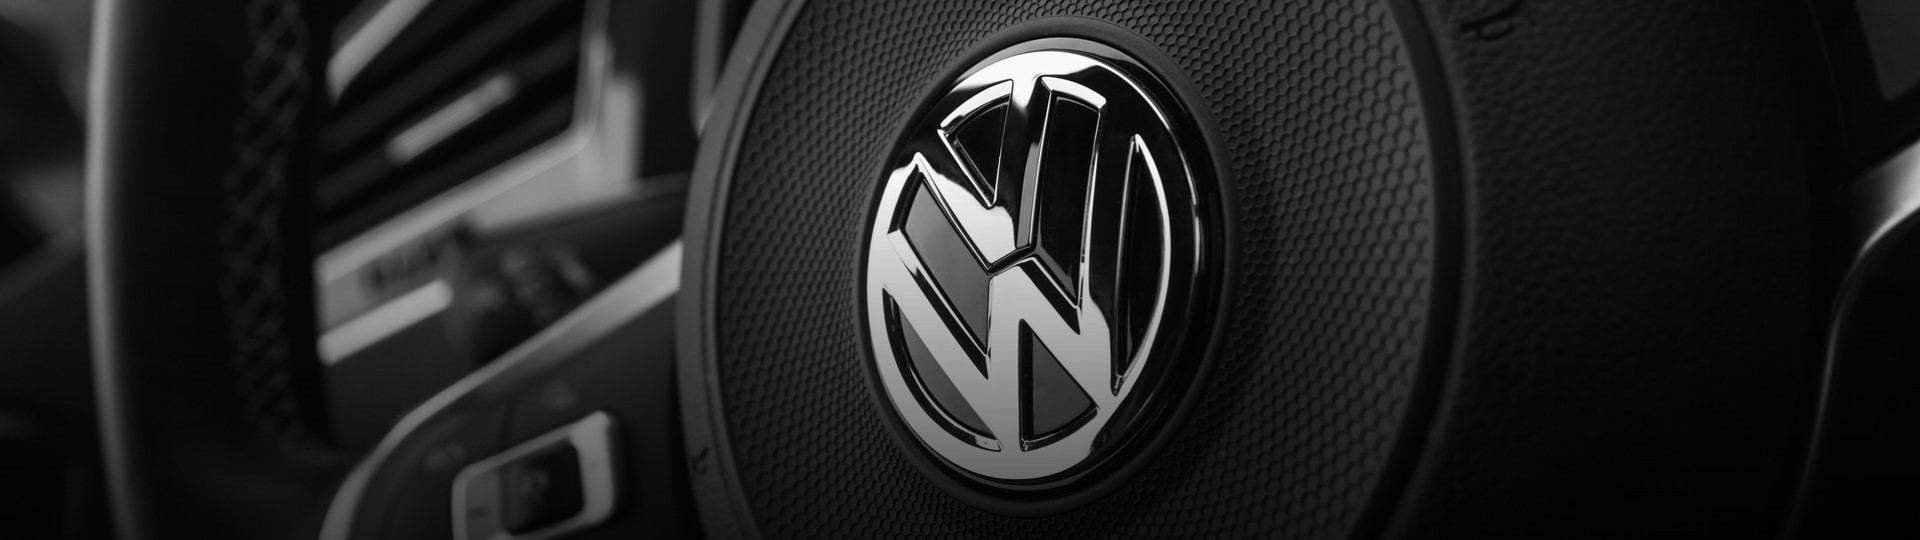 Prodej značek Volkswagen a Audi loni kvůli pandemii klesl